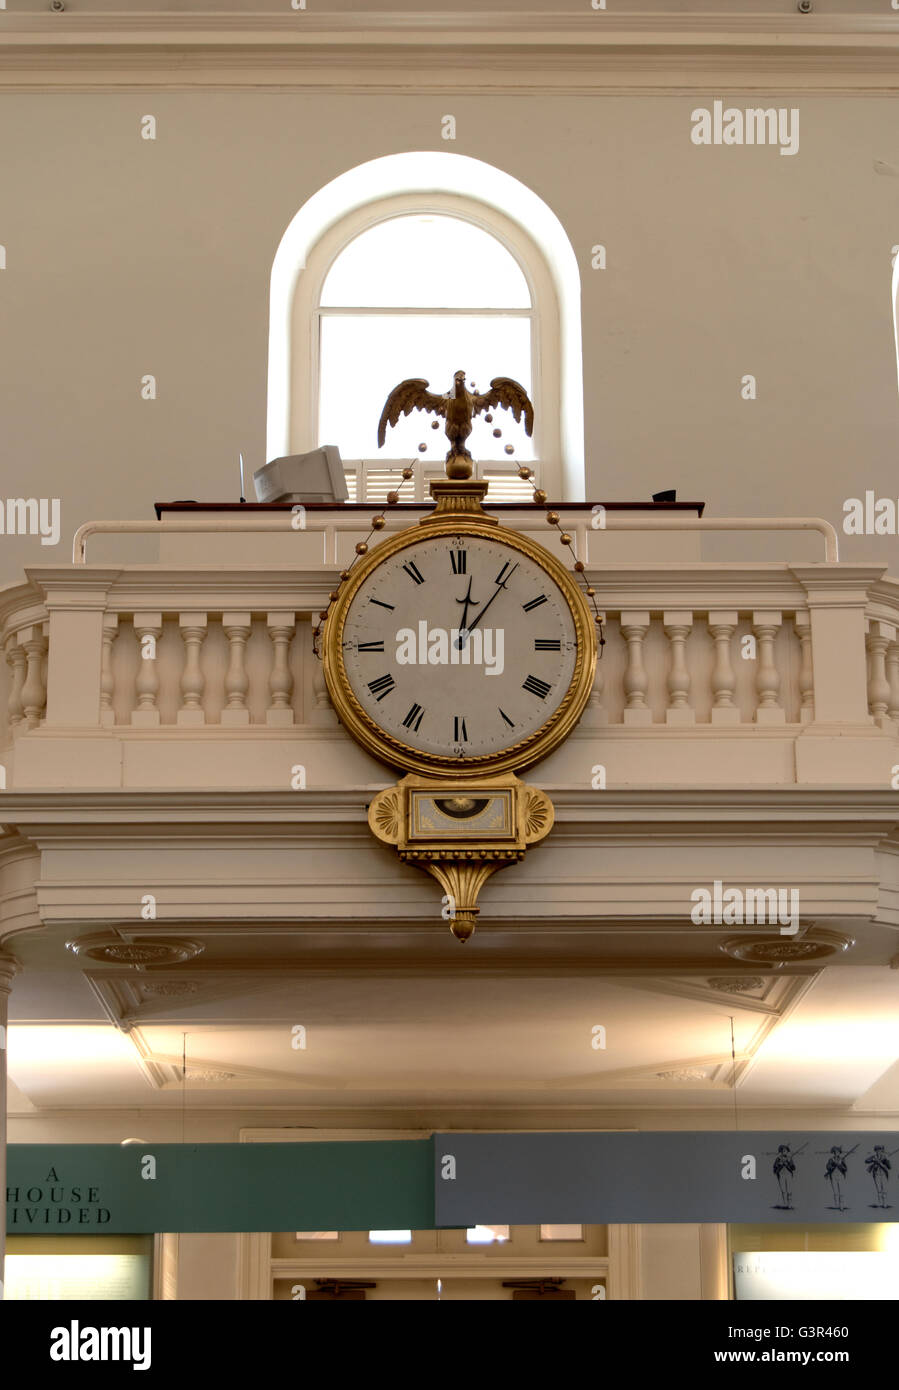 Historique de Boston state house interior réveil Banque D'Images